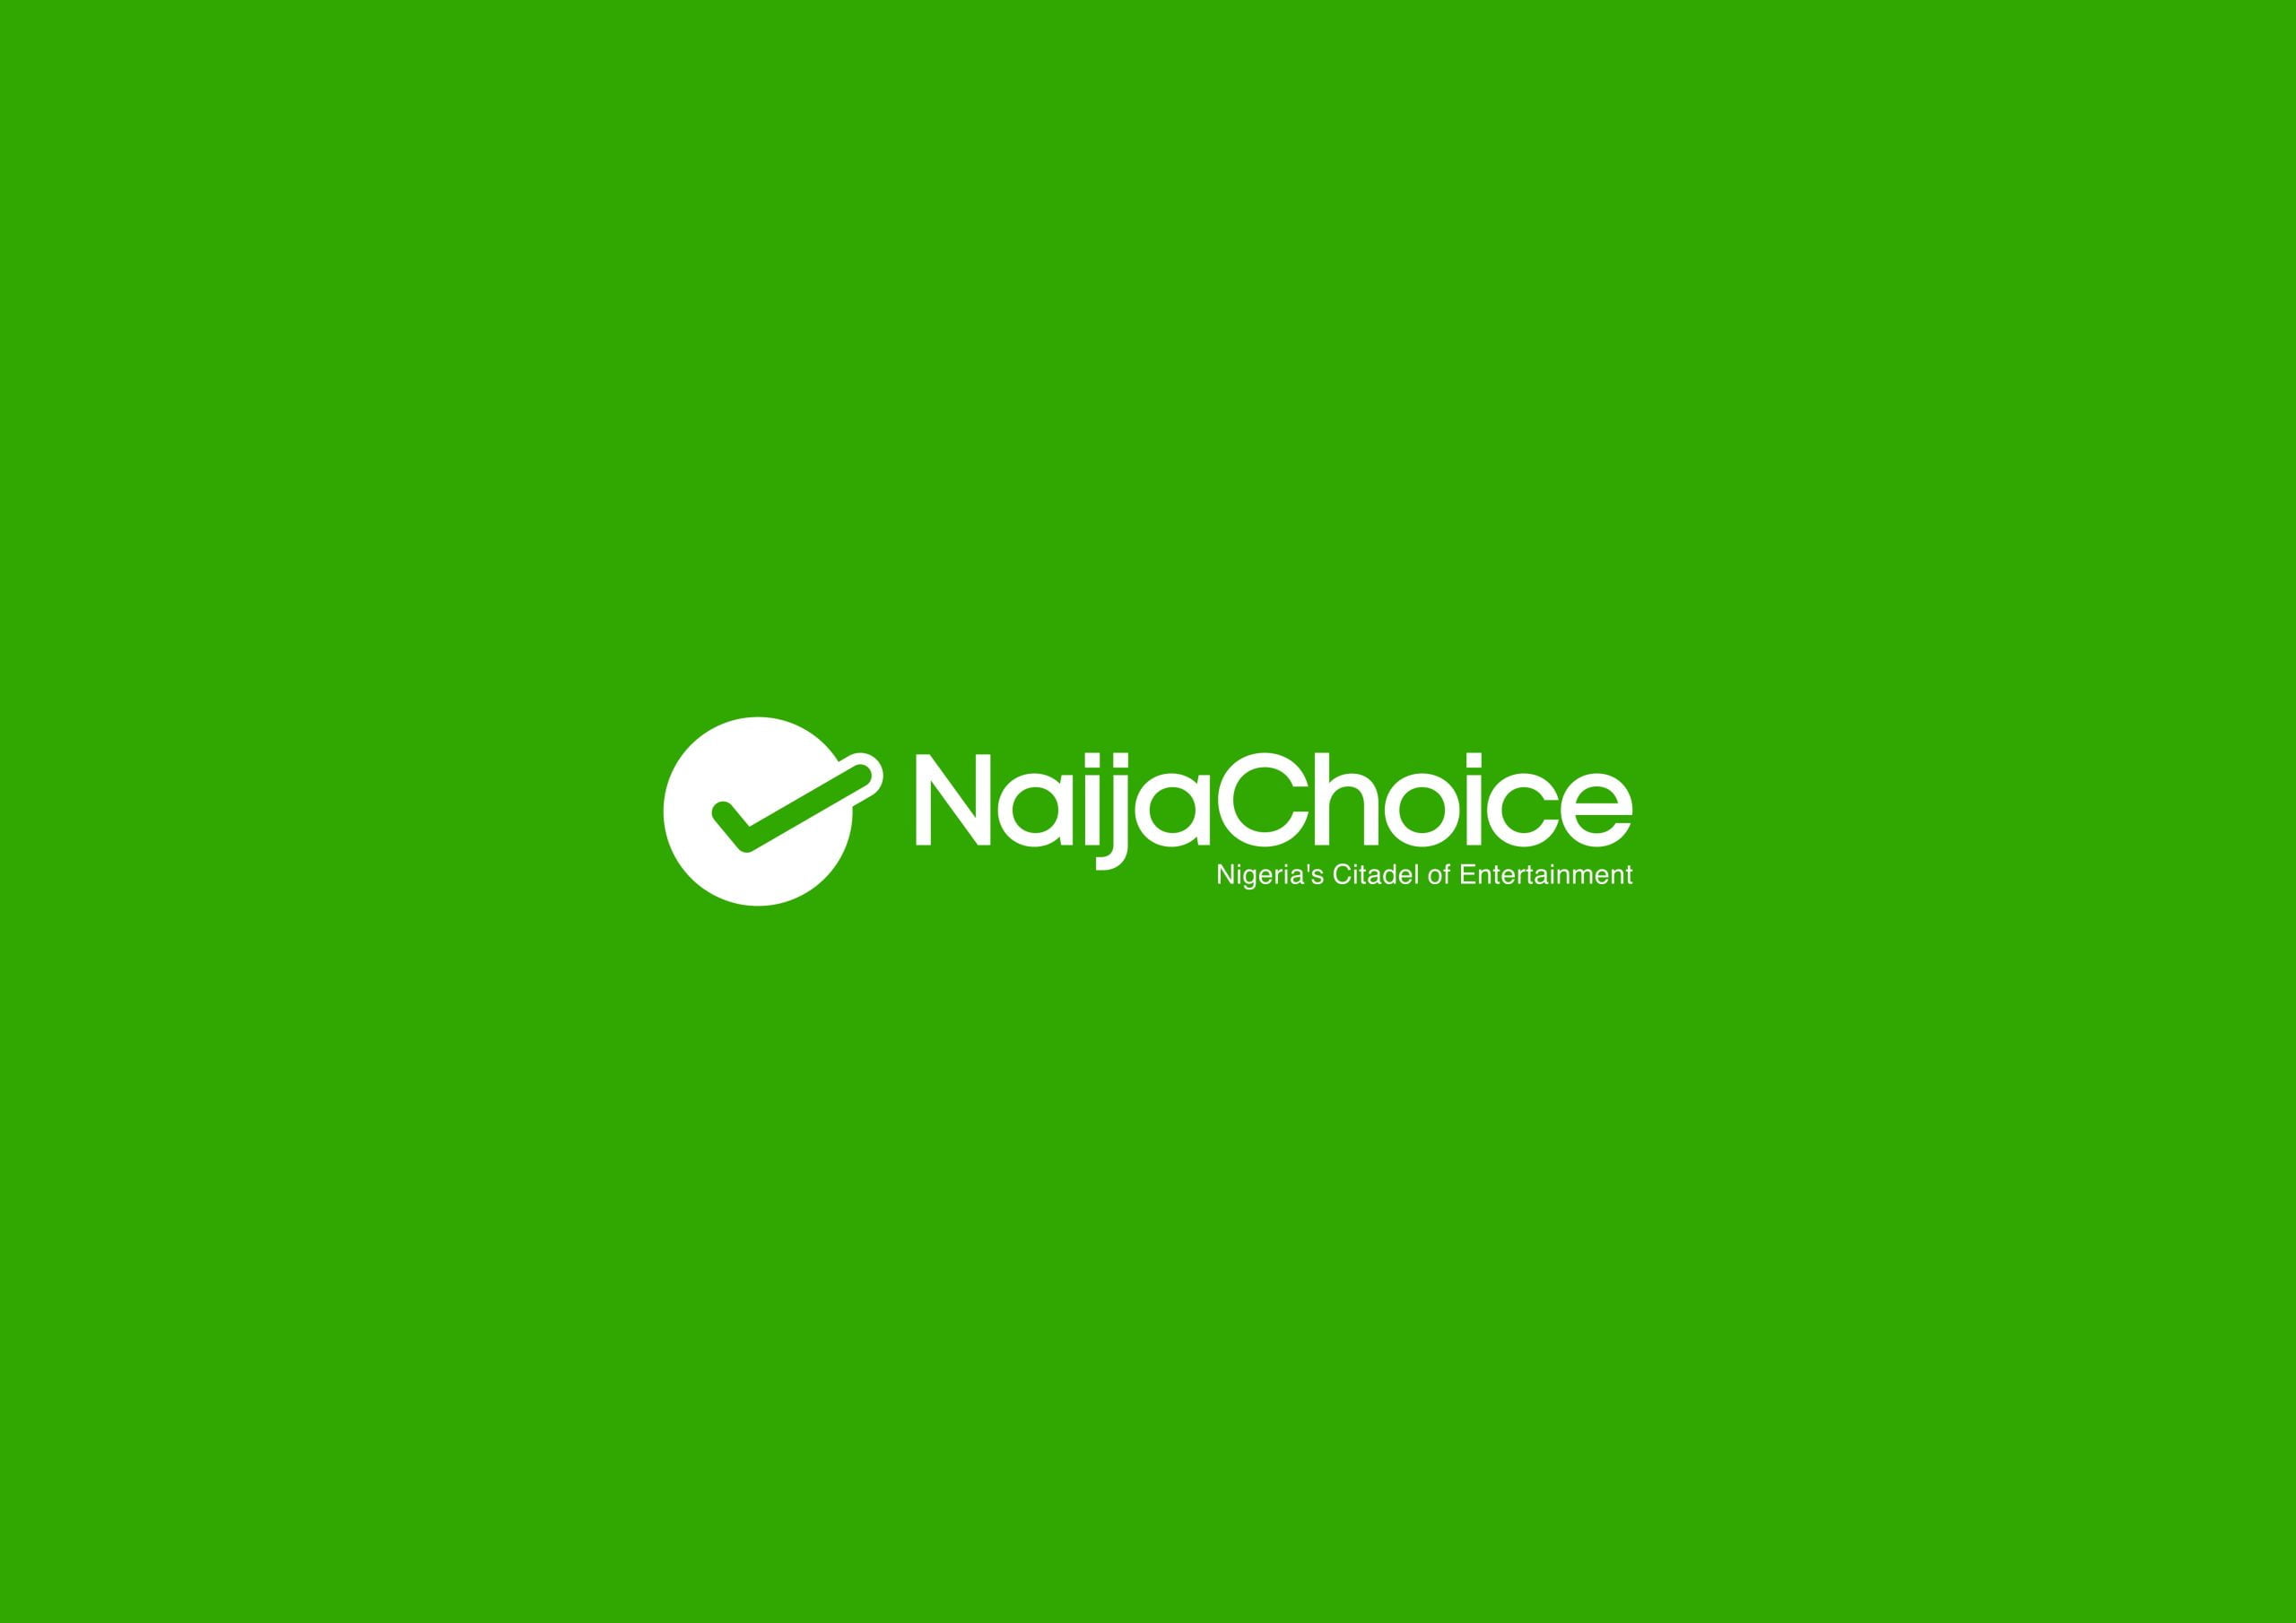 naijachoice logo3 scaled